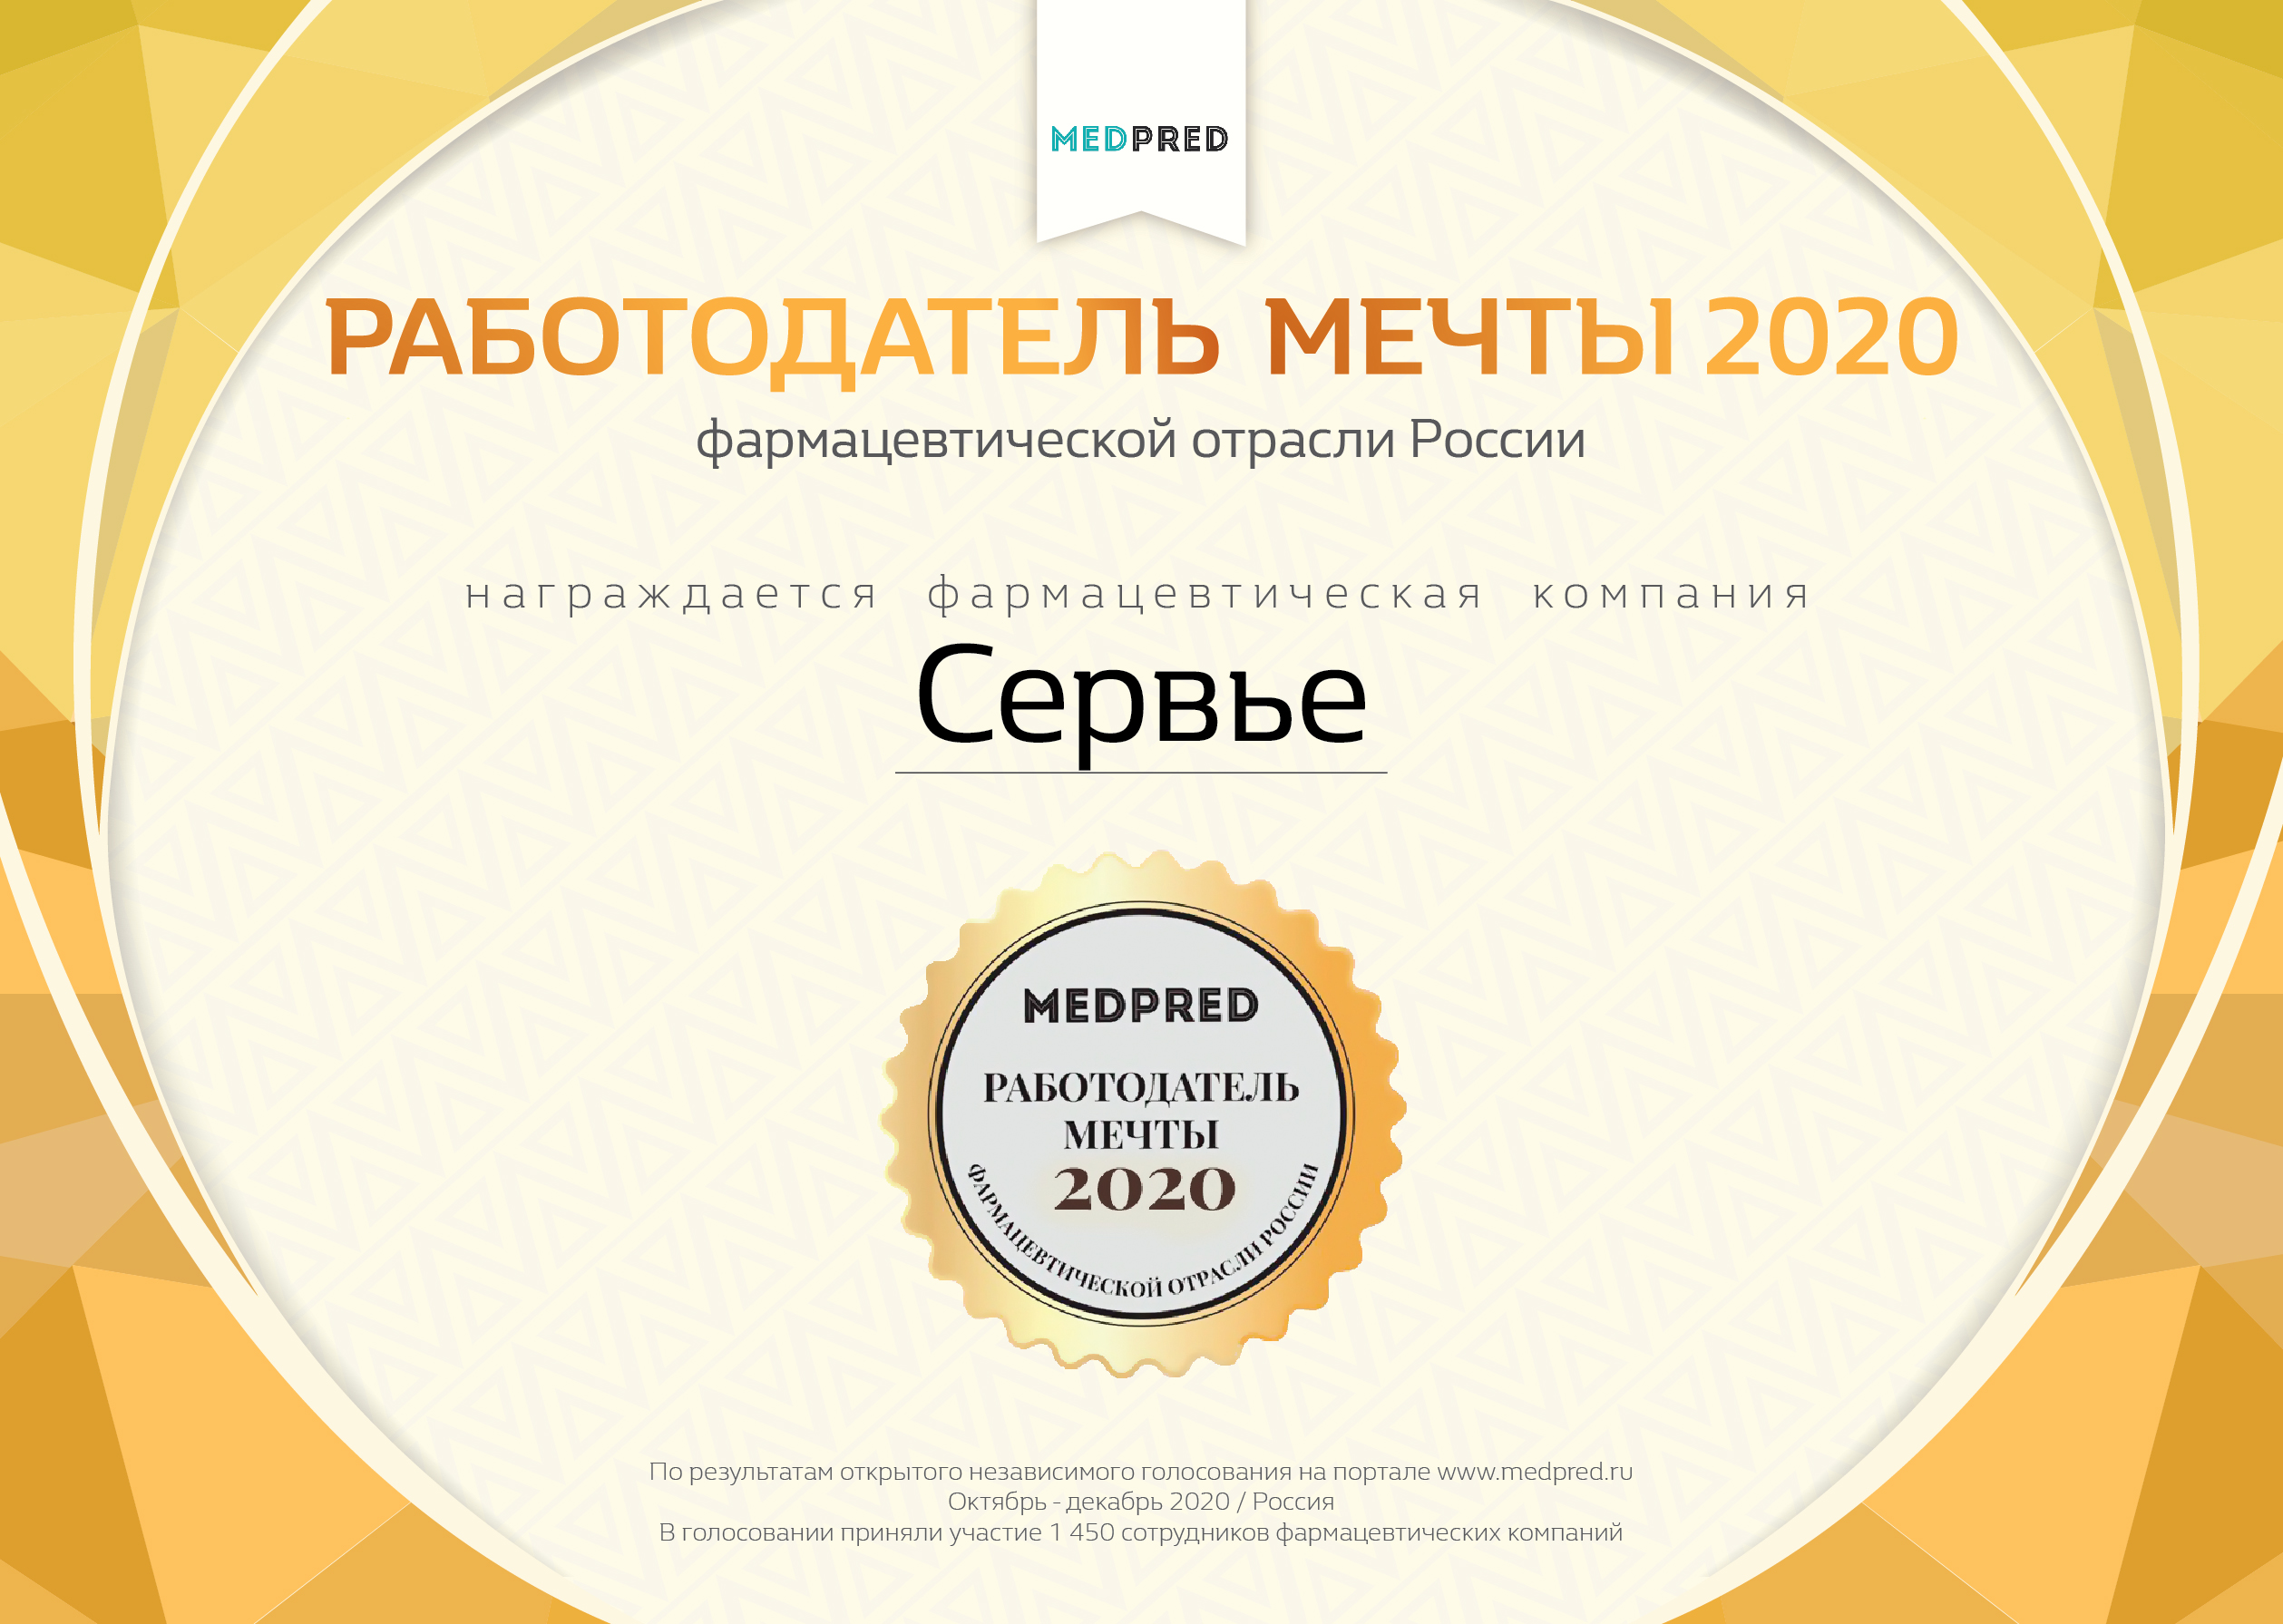 Компания Сервье признана Работодателем мечты 2020